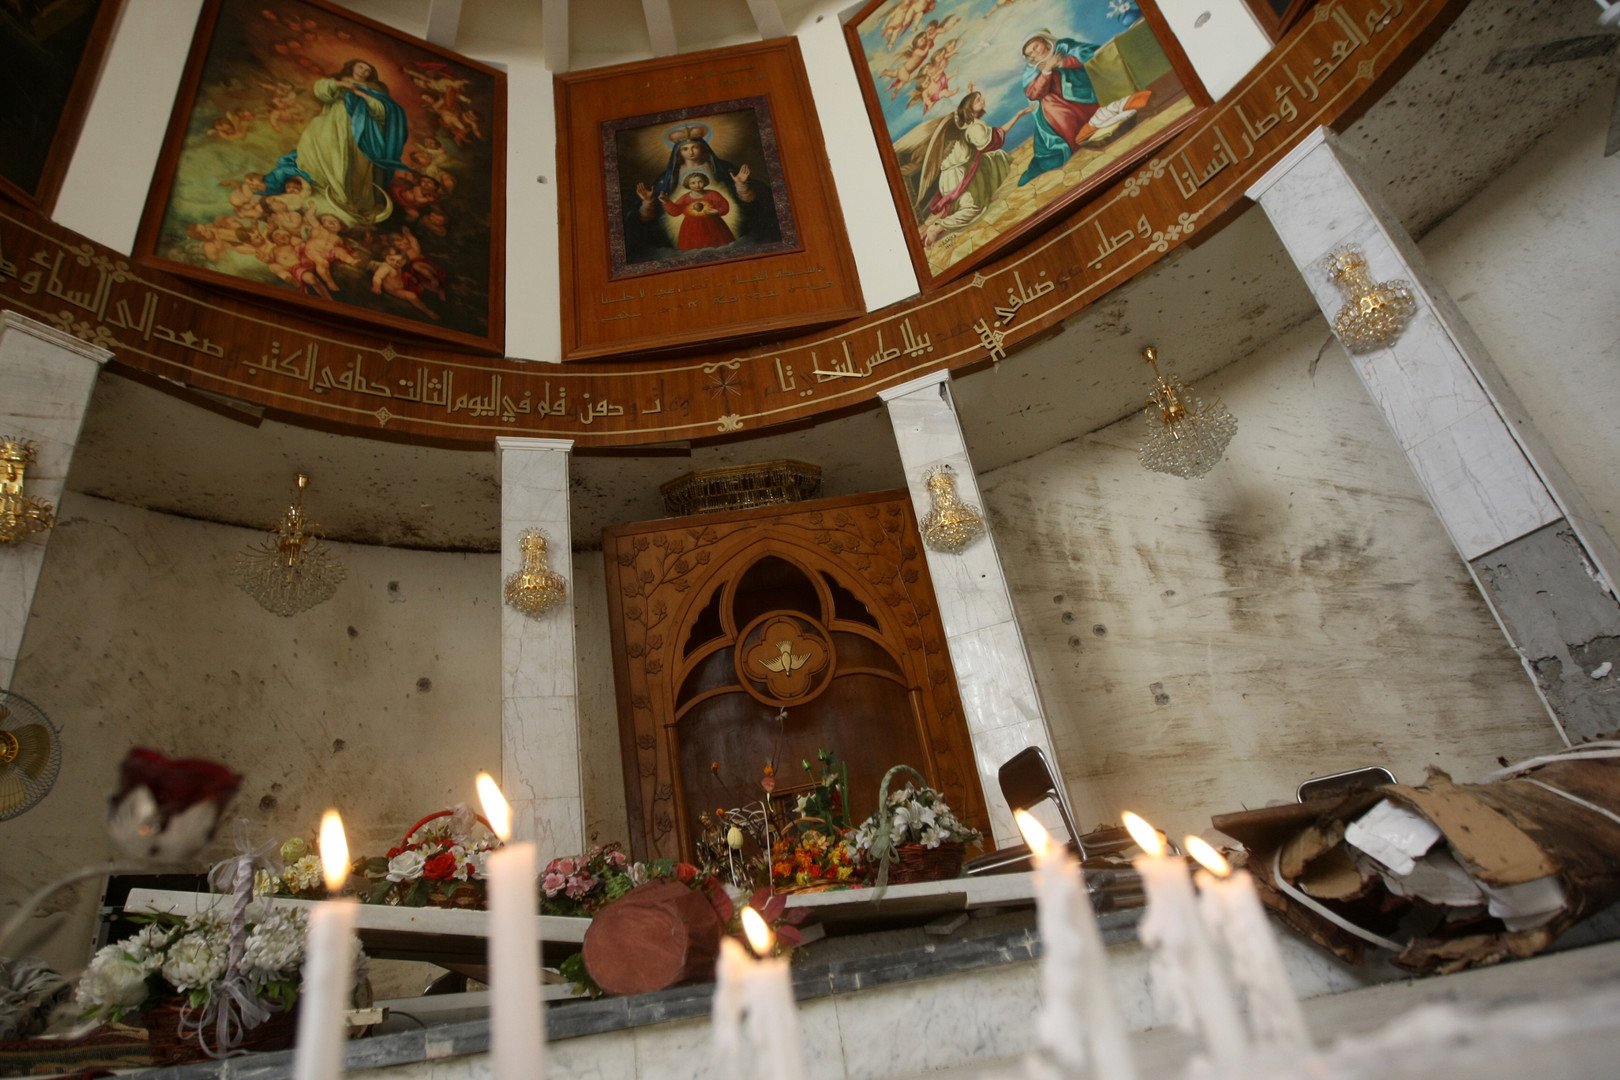 أعنف الهجمات التي استهدفت دور عبادة مسيحية في الشرق الأوسط منذ 2011